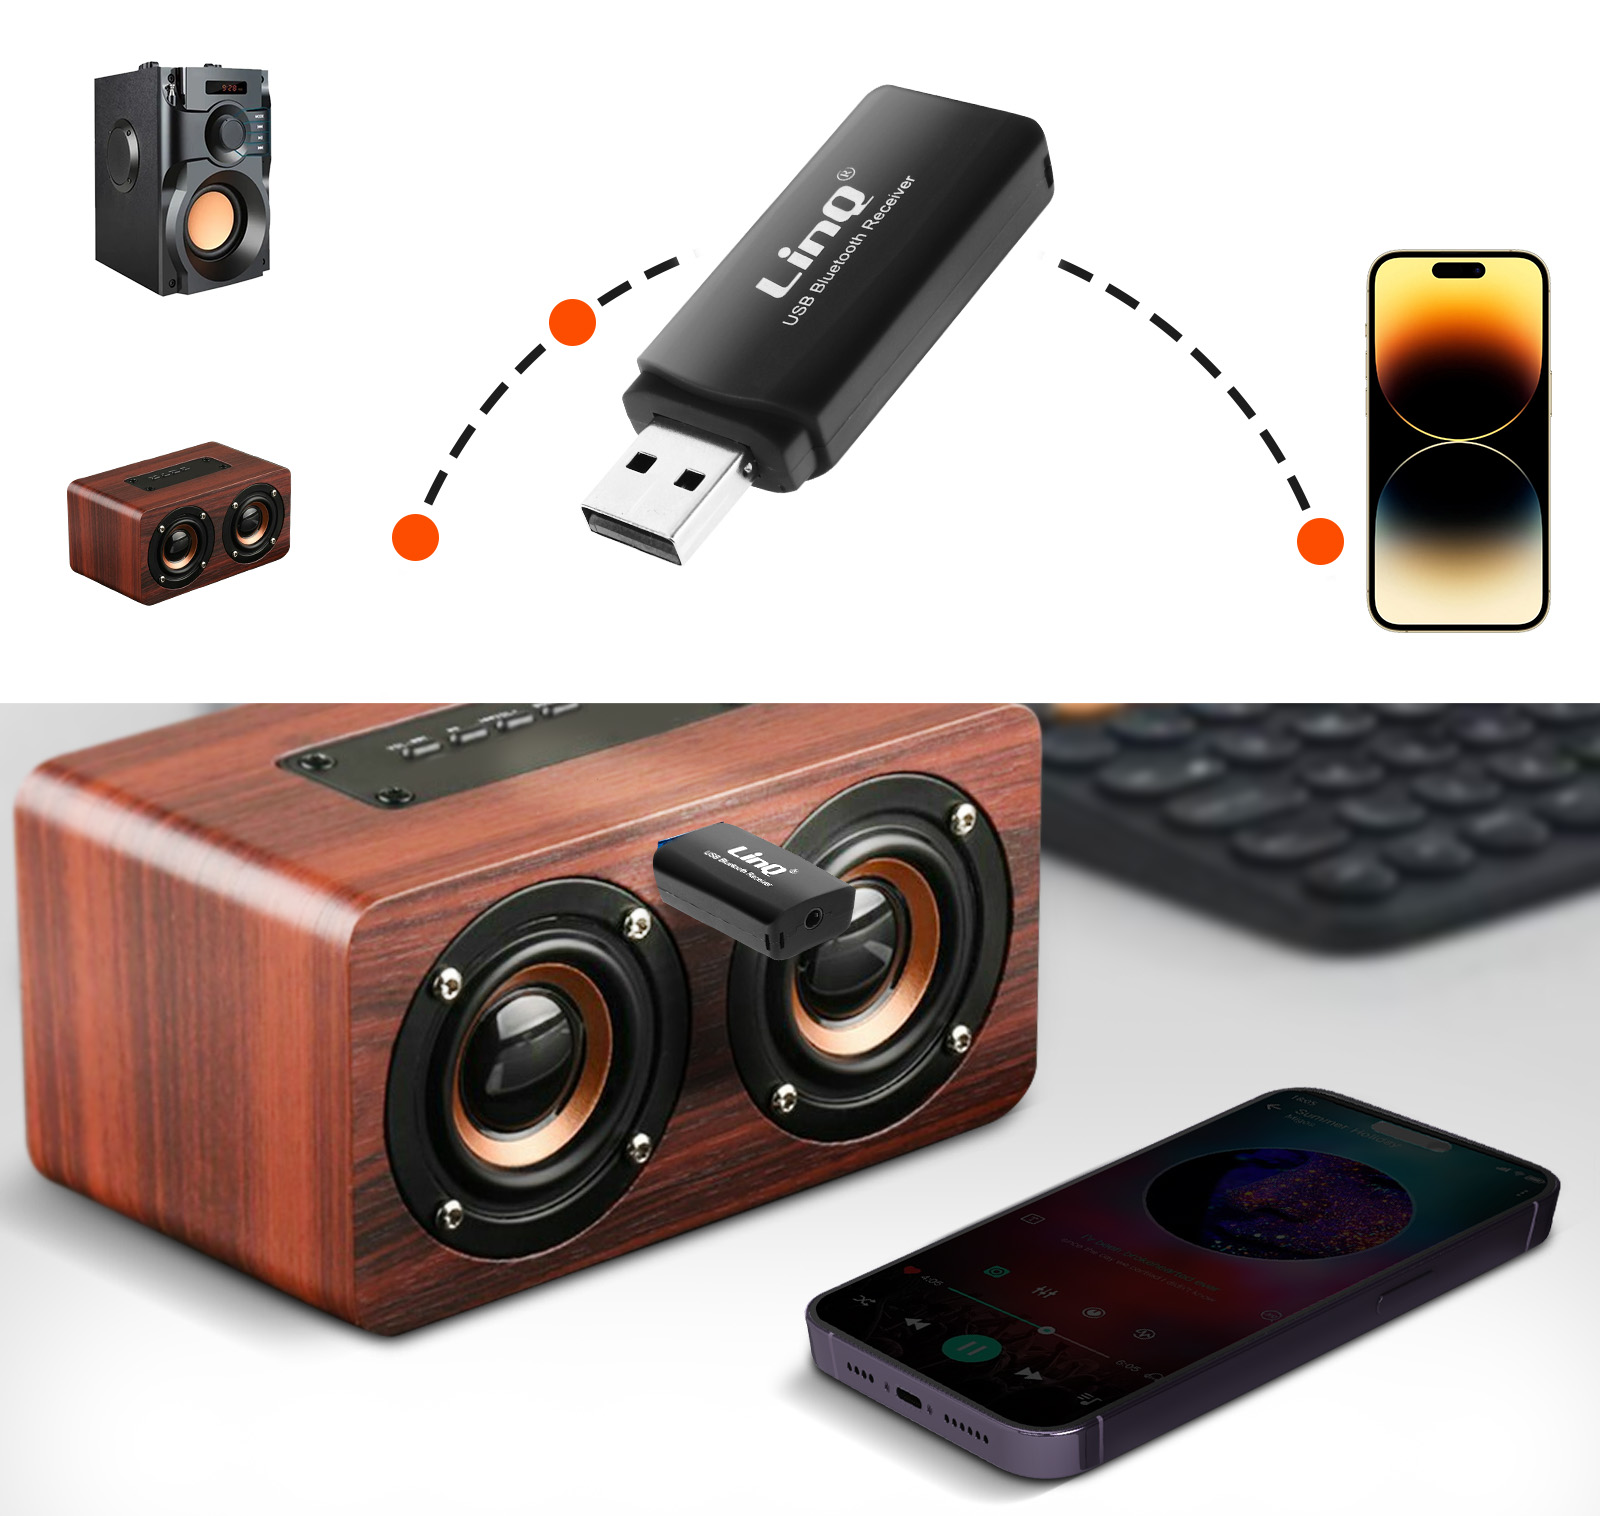 Adaptateur Audio Bluetooth, Récepteur Sans-fil USB avec Sortie